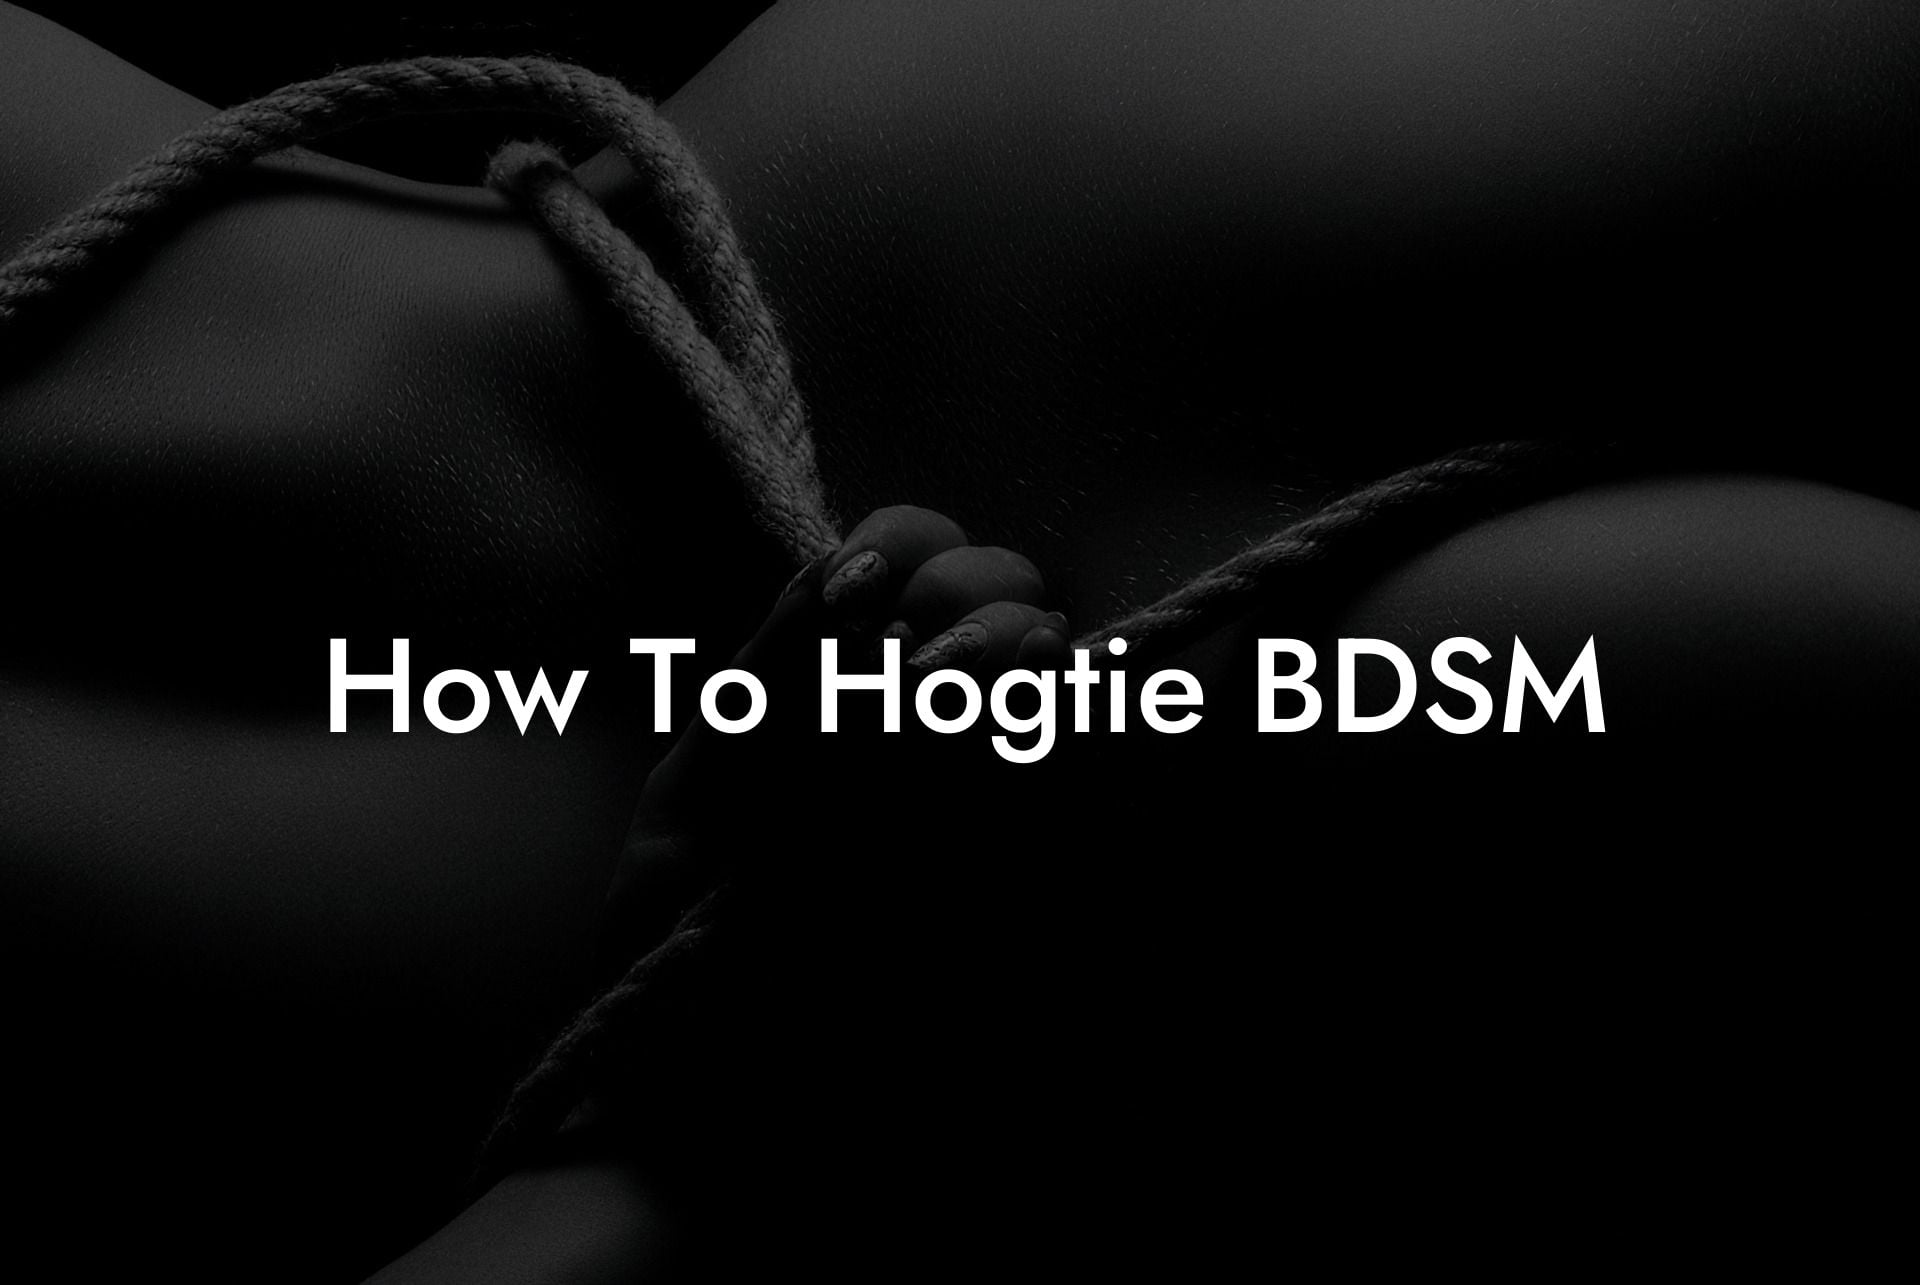 How To Hogtie BDSM